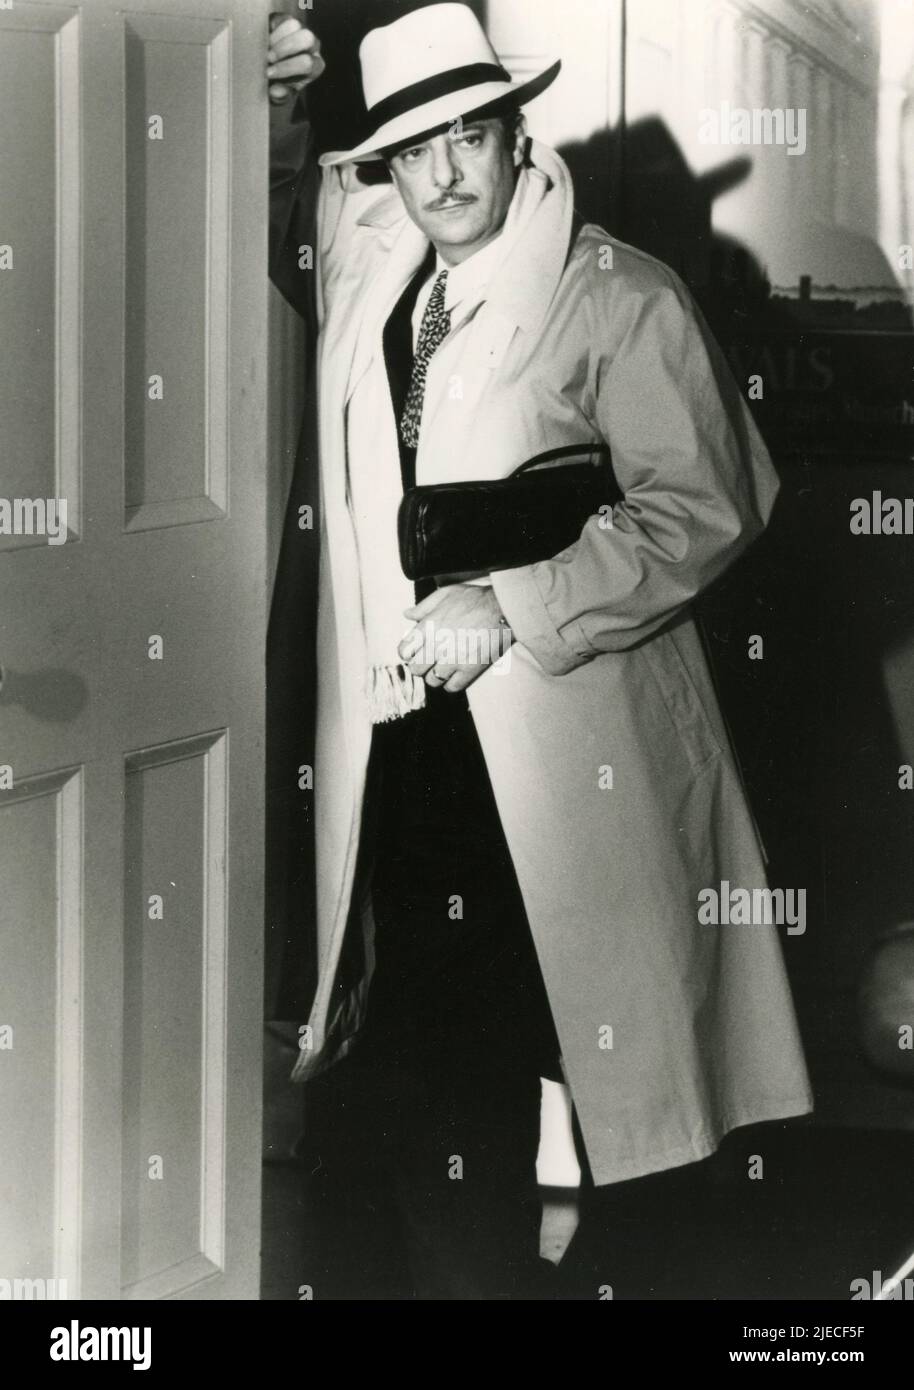 Der italienische Schauspieler Giancarlo Giannini im Film New York Stories, USA 1989 Stockfoto